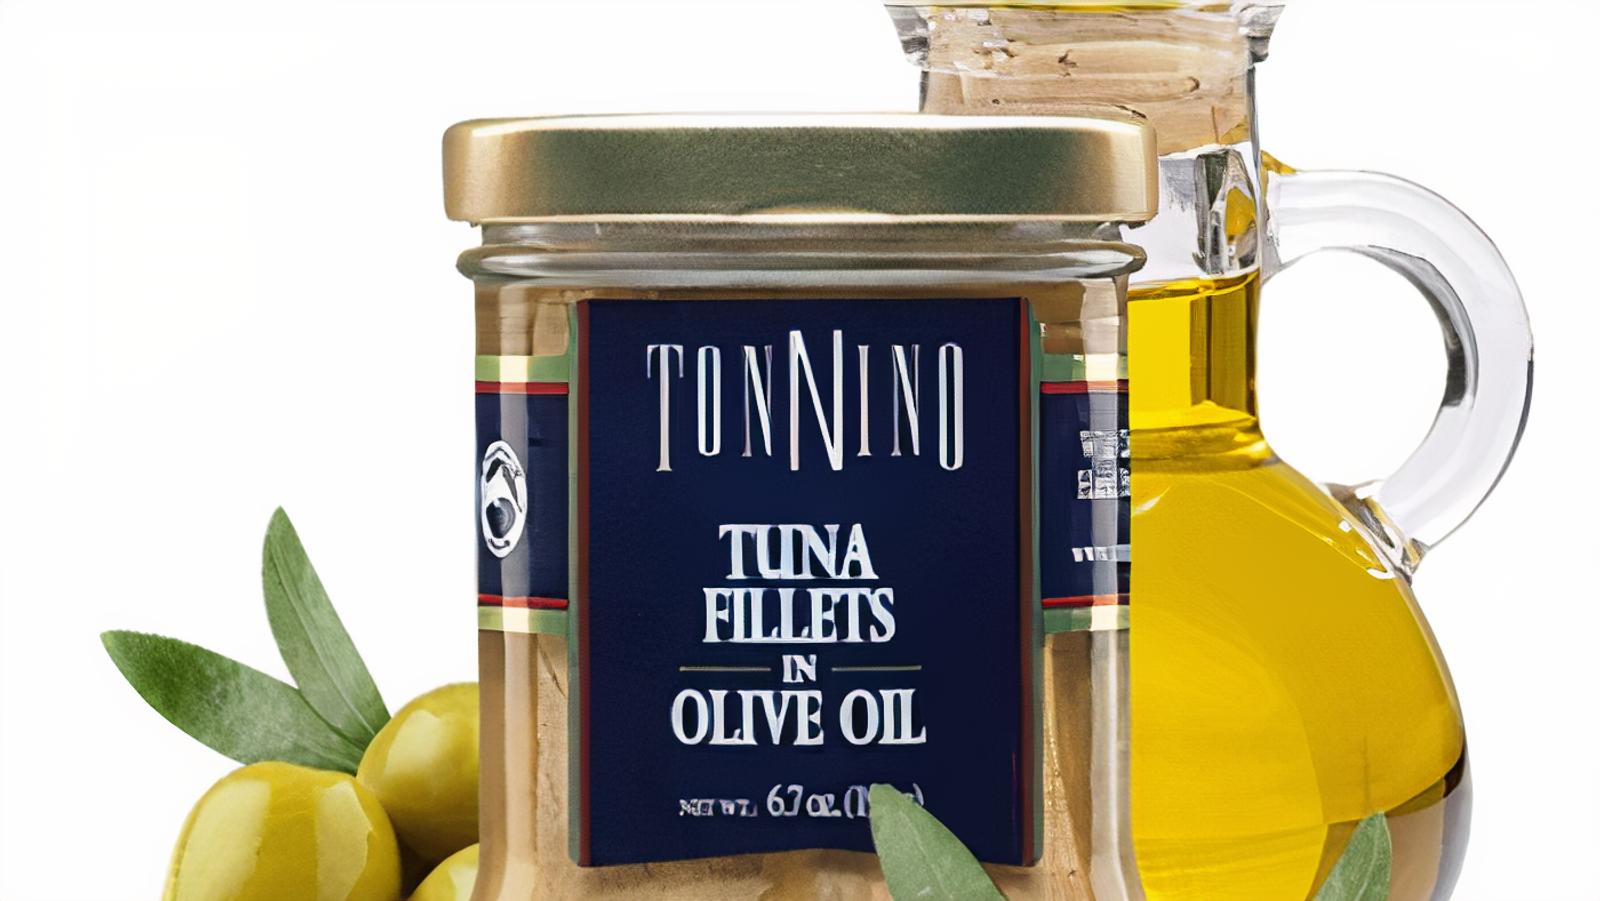 Tonnino Tuna with Olive Oil (6.7 oz.)